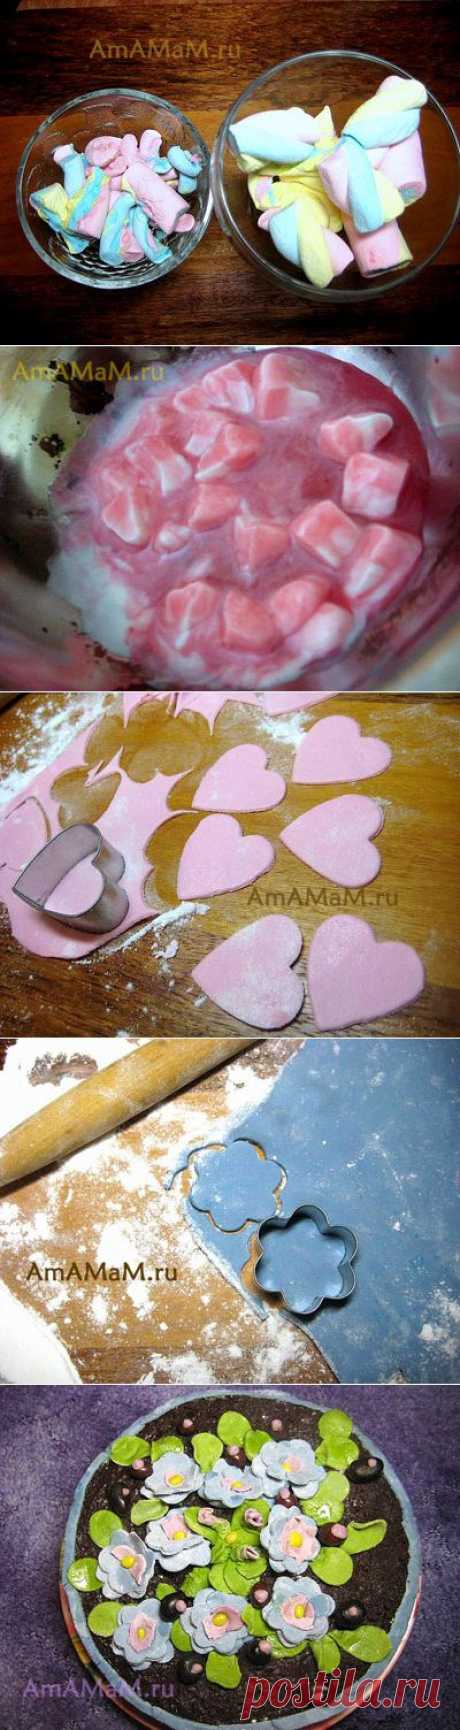 Как сделать мастику из маршмэллоу (зефира) для торта, цветов и фигурок